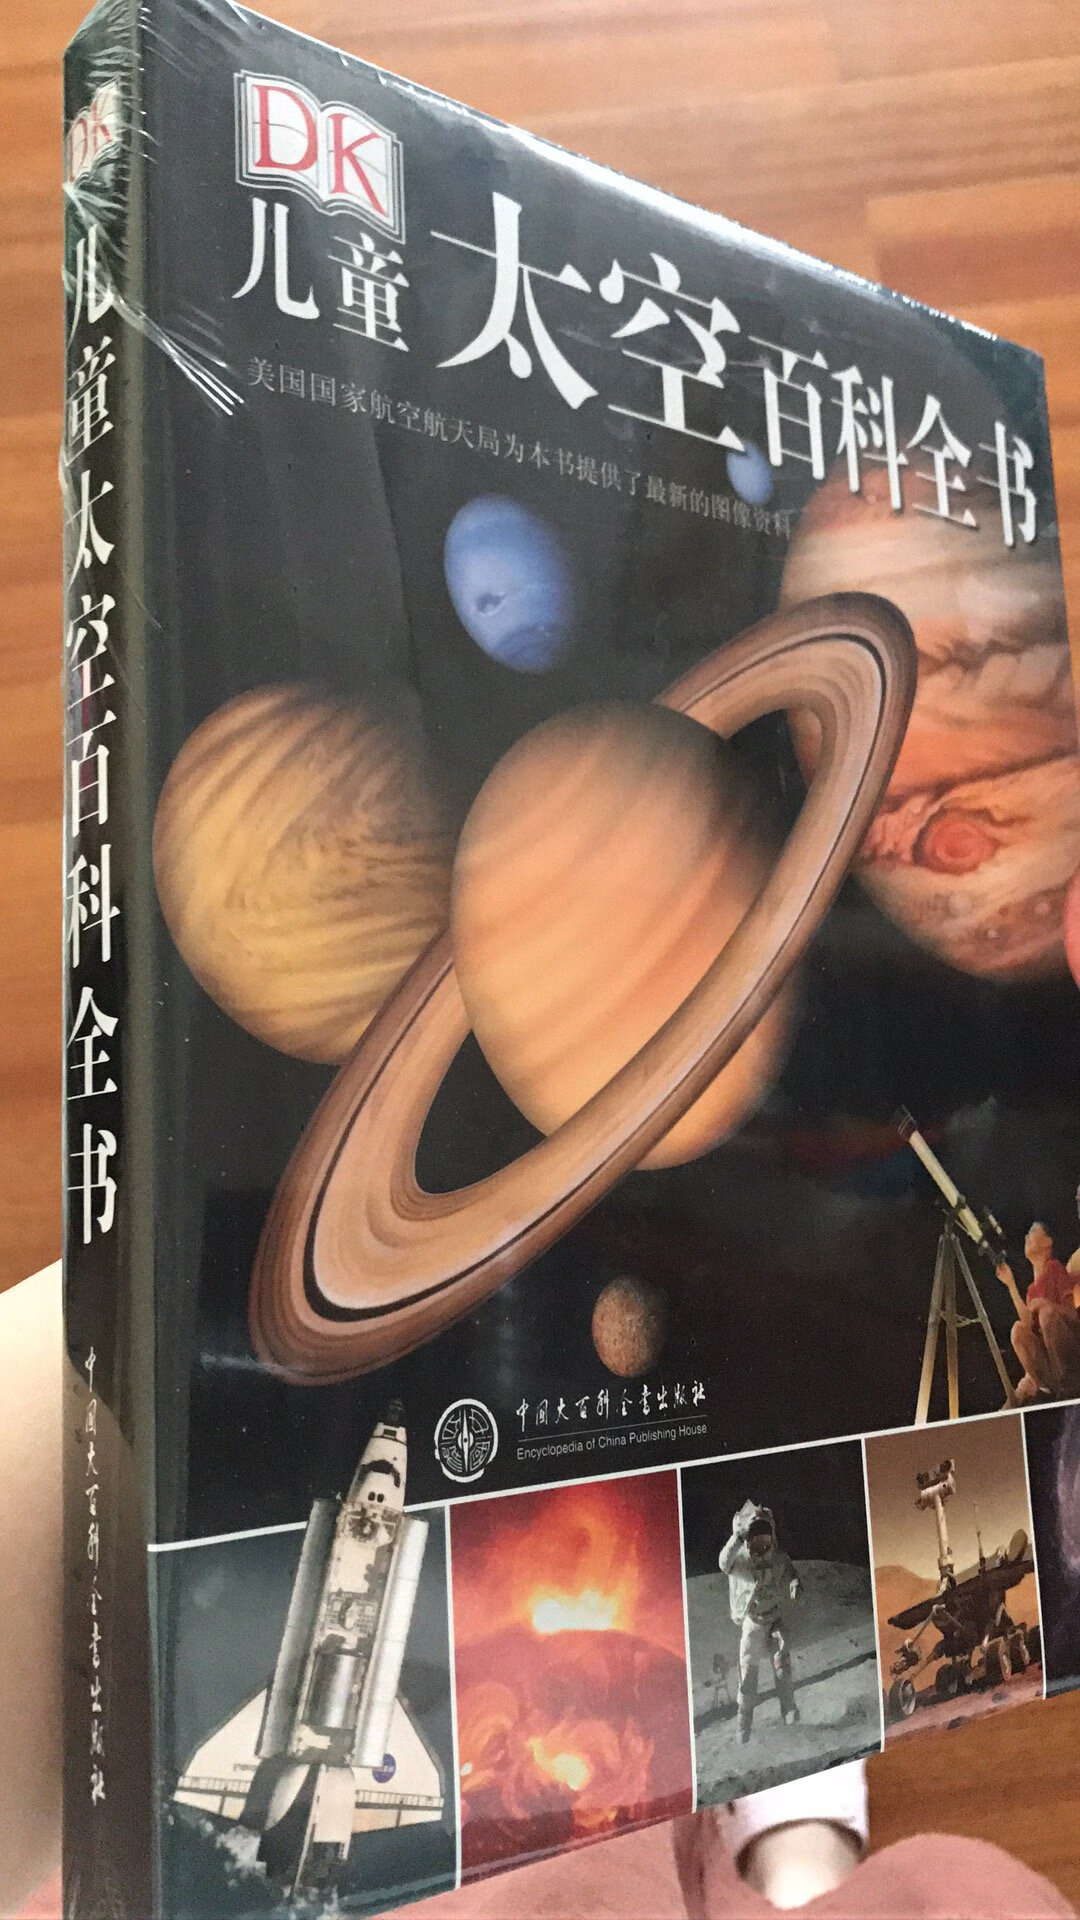 本书是自营的，是由中囯大百科全书出版社与英国DK出版公司同步出版的全新正版书。全书256页，16开本，全彩印刷，图文并茂，方脊精装，是一本给孩子们阅读的科普精品书。美国国家航空航天局（NASA）为本书提供了全新的资料，能够满足孩子的种种好奇心。五星好评。